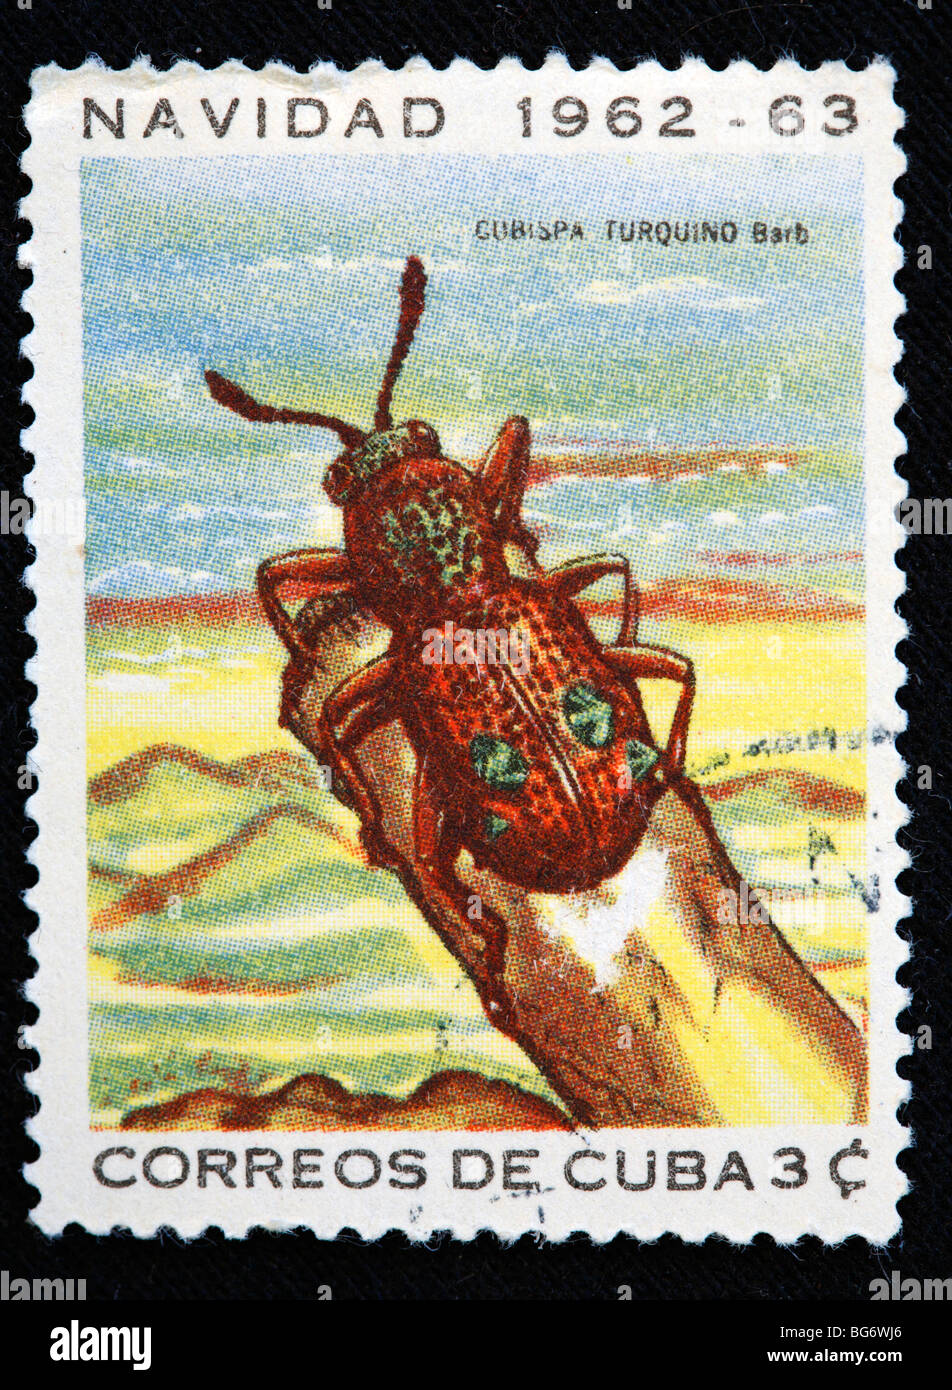 Cubispa turquino, timbre-poste, Cuba, 1963 Banque D'Images